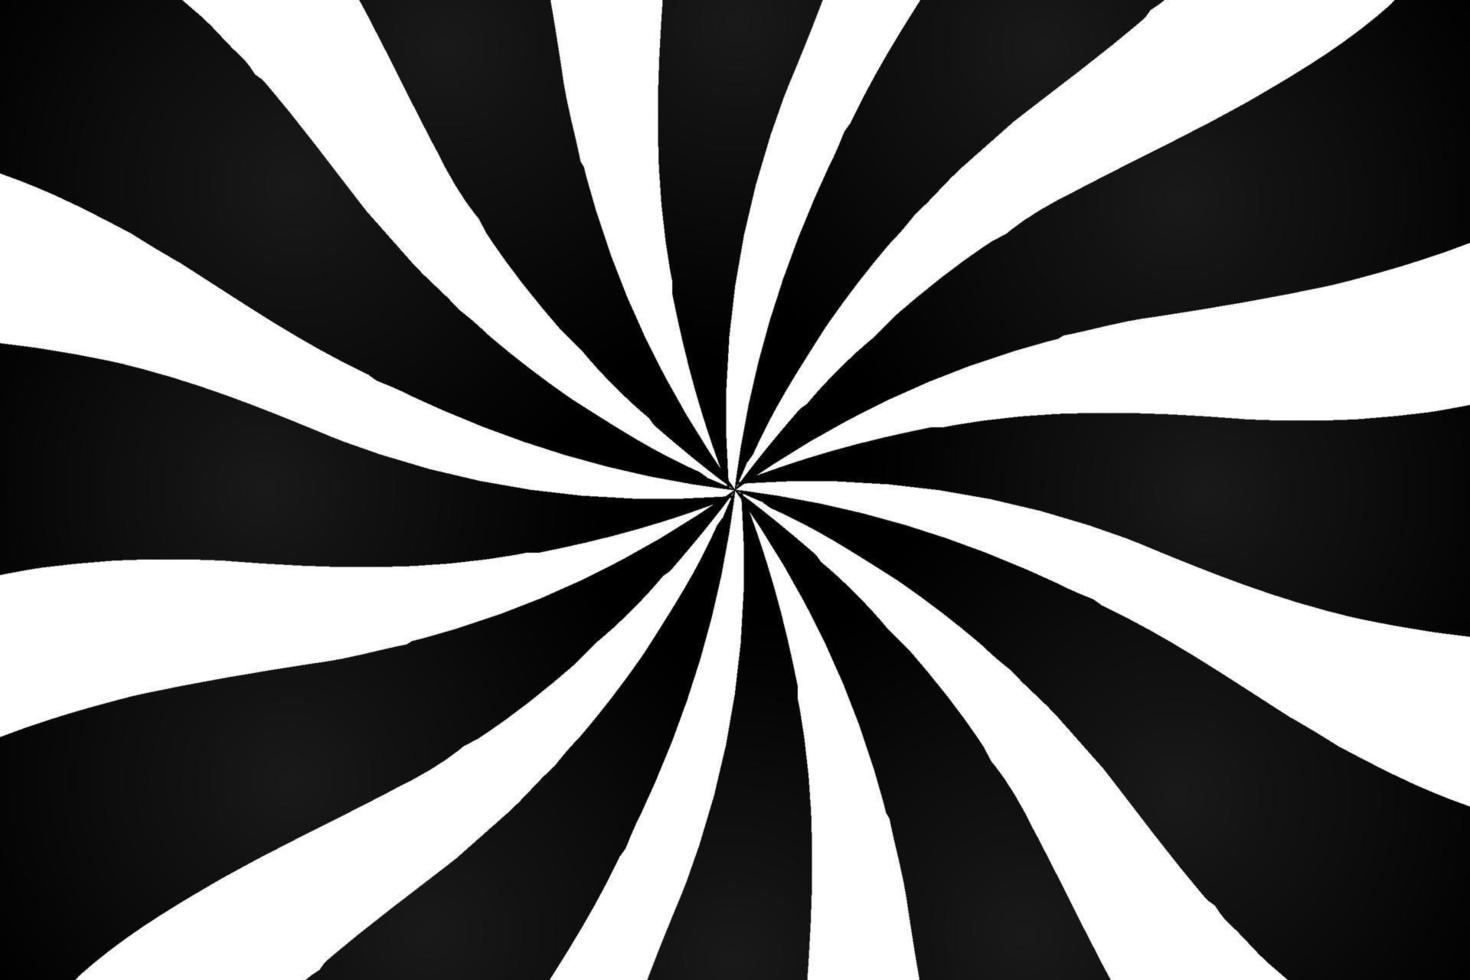 schwarz-weißer hypnotischer optischer Täuschungshintergrund mit Strahlen, Vektorillustration vektor